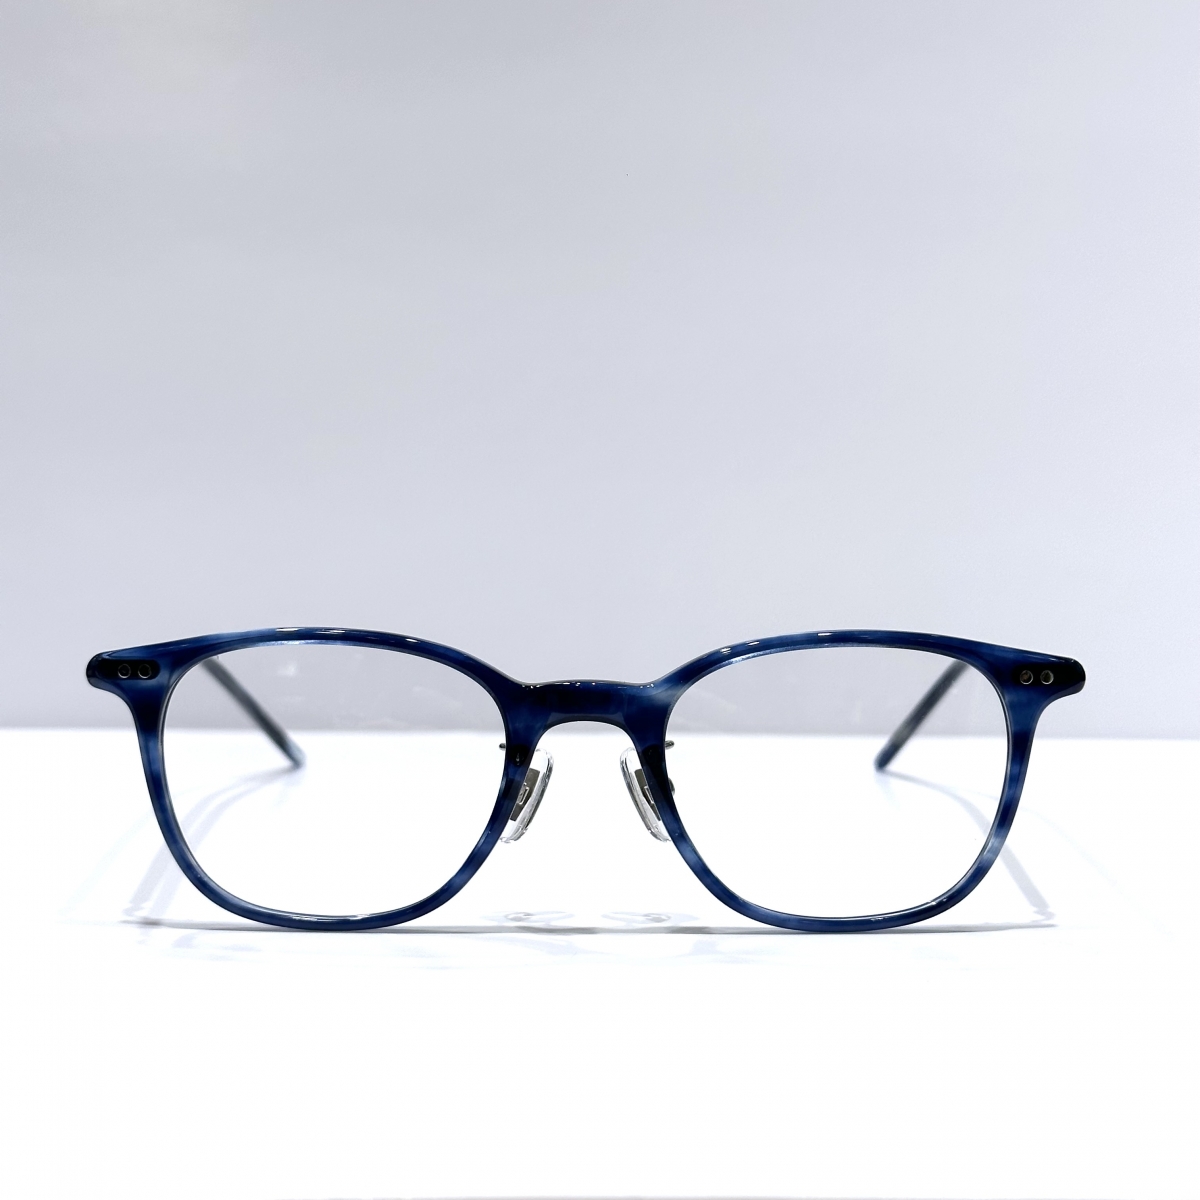 金子眼鏡 CELLULOID KC38 カネコ オプティカル メガネ フレームレンズ47